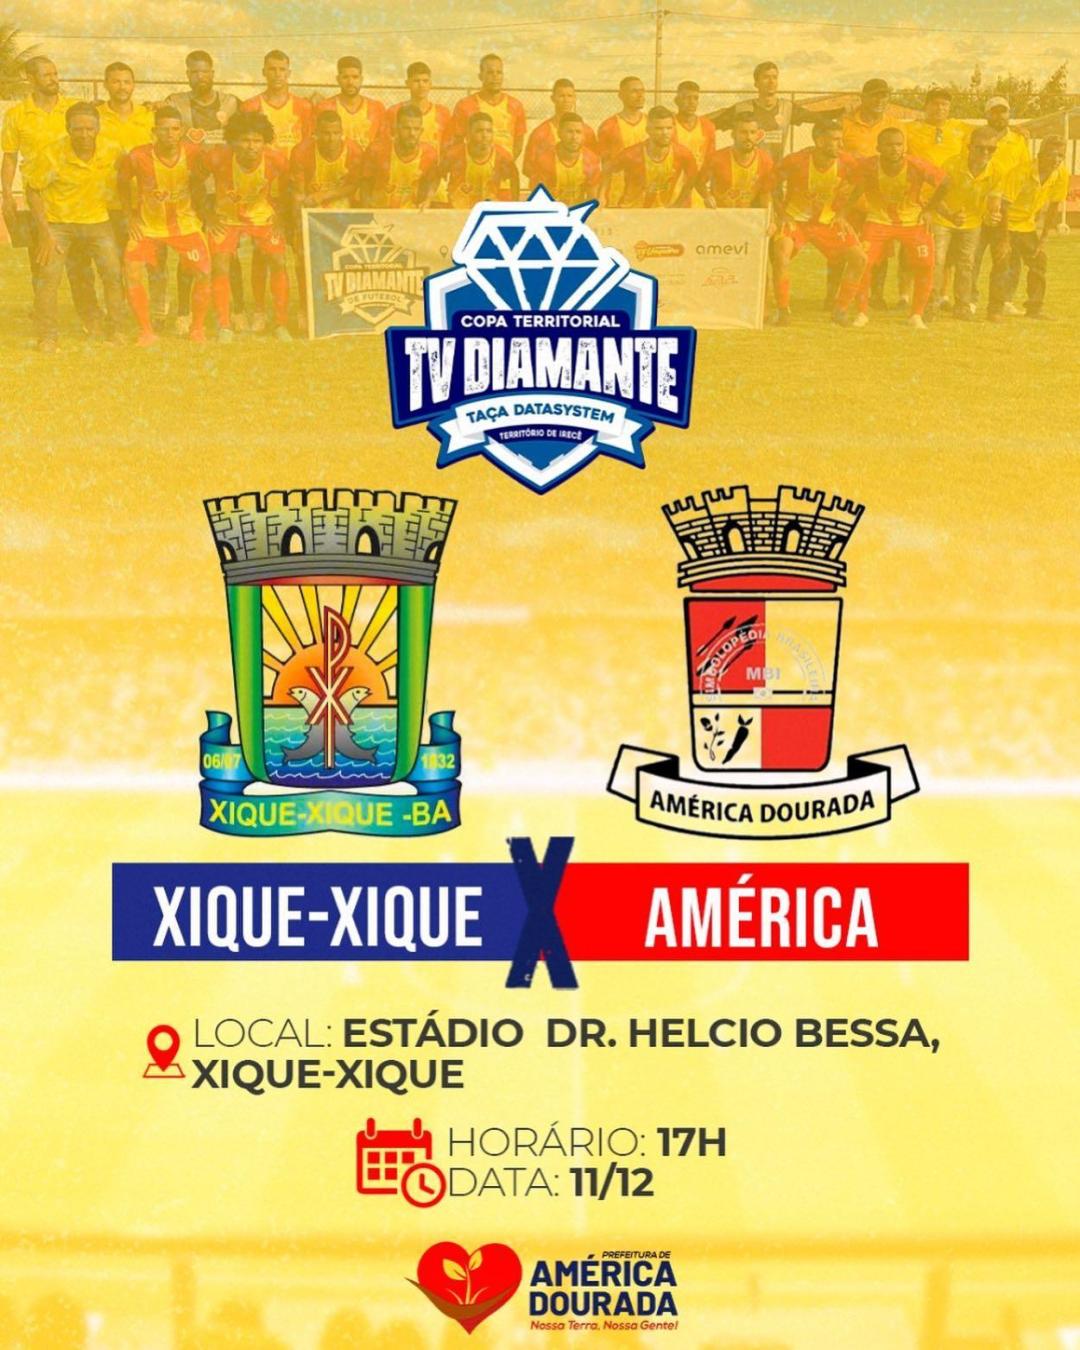 Neste domingo, dia 11 de dezembro, teremos mais uma rodada da Copa Territorial TV Diamante de Futebol.